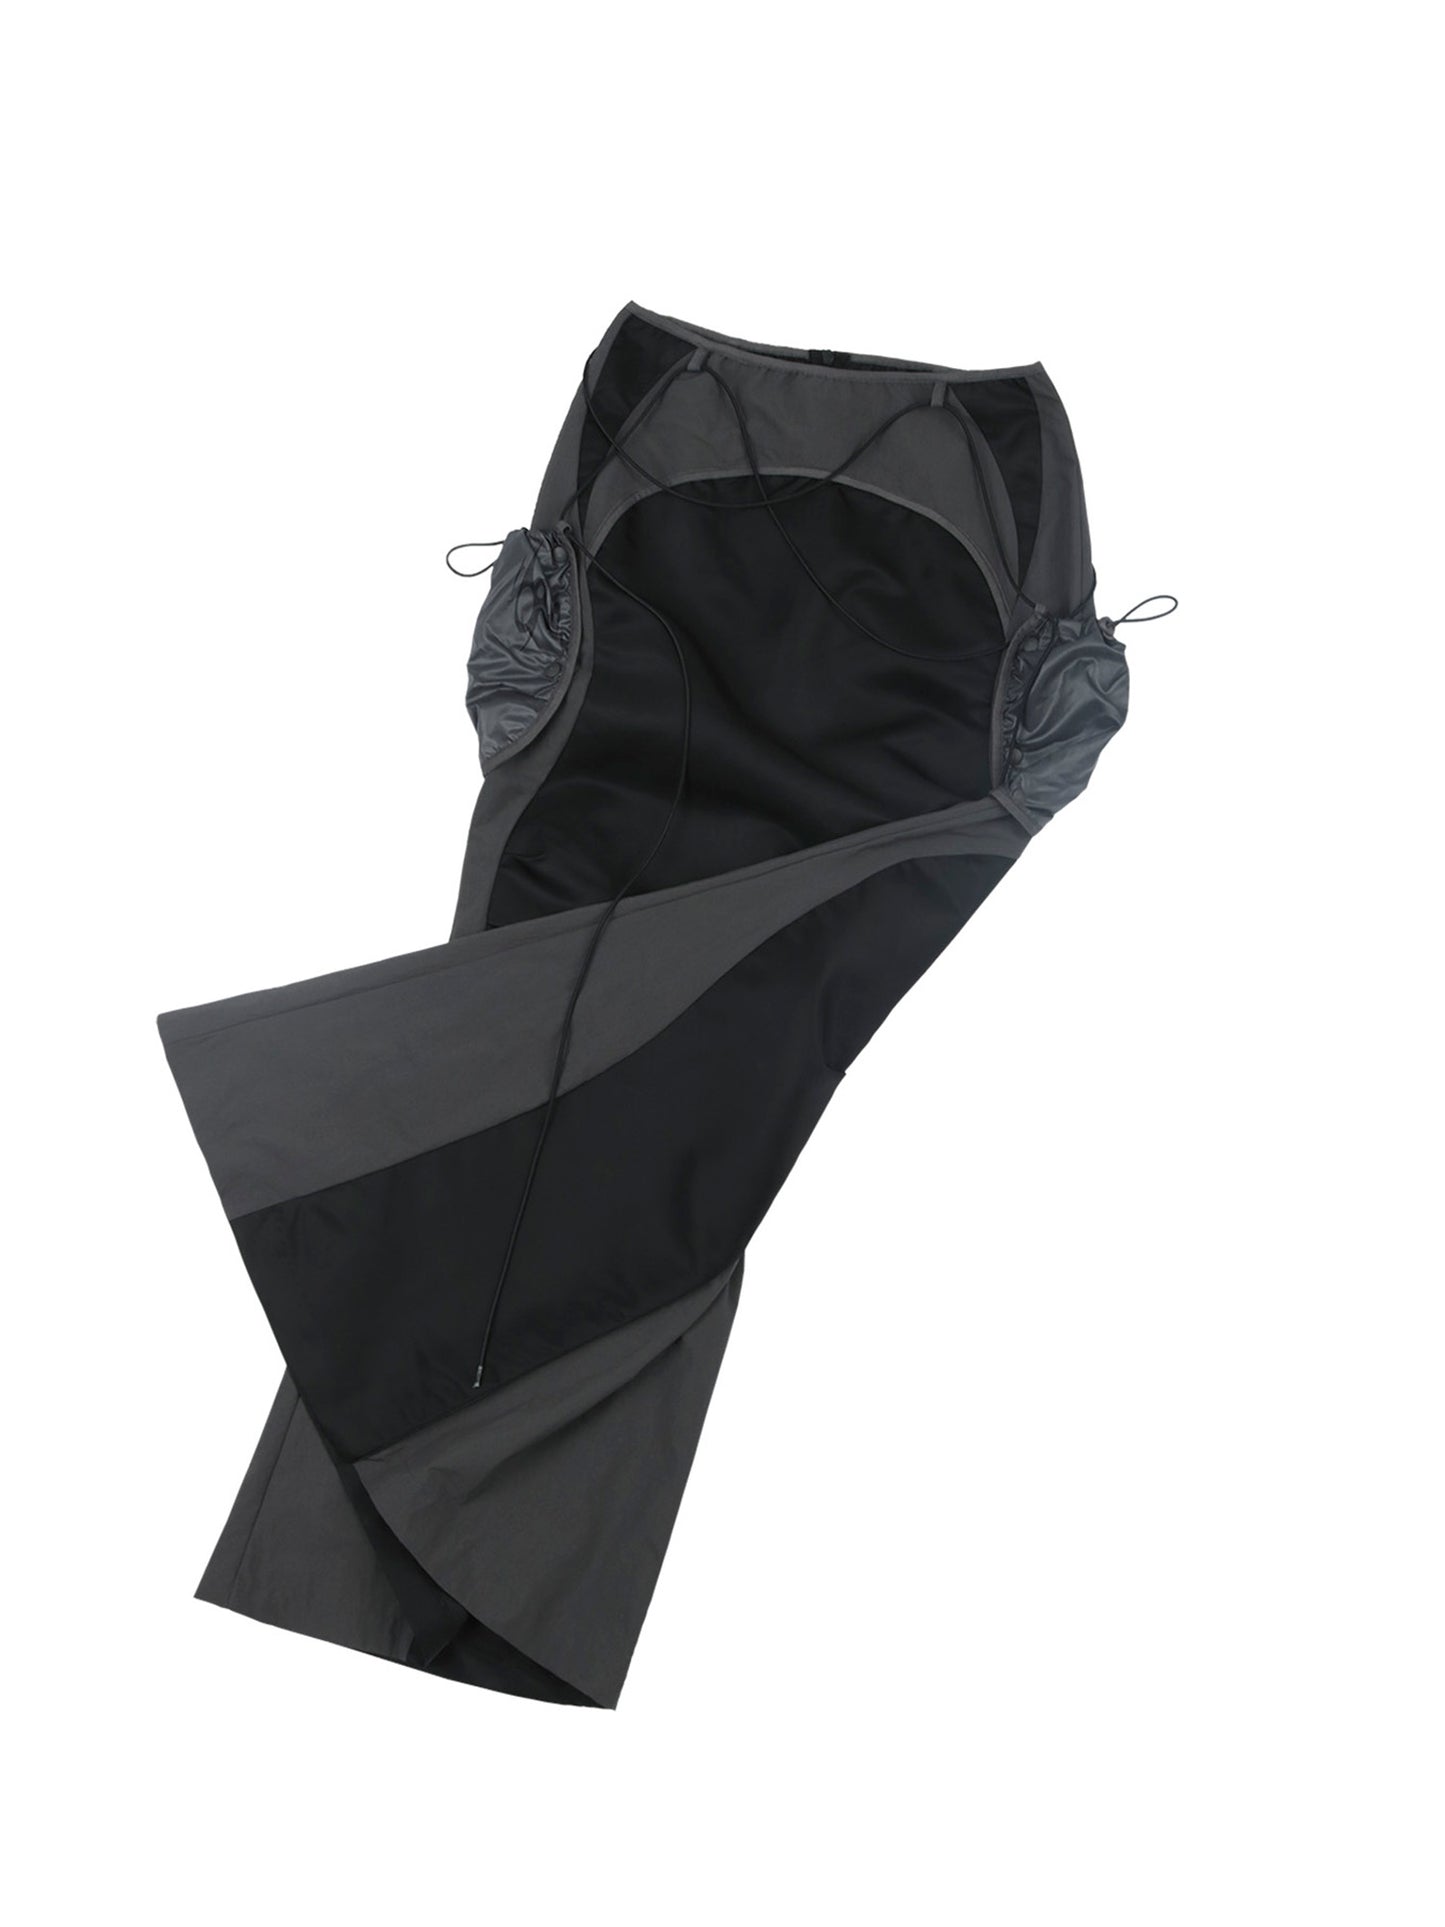 Pocket bag long skirt black